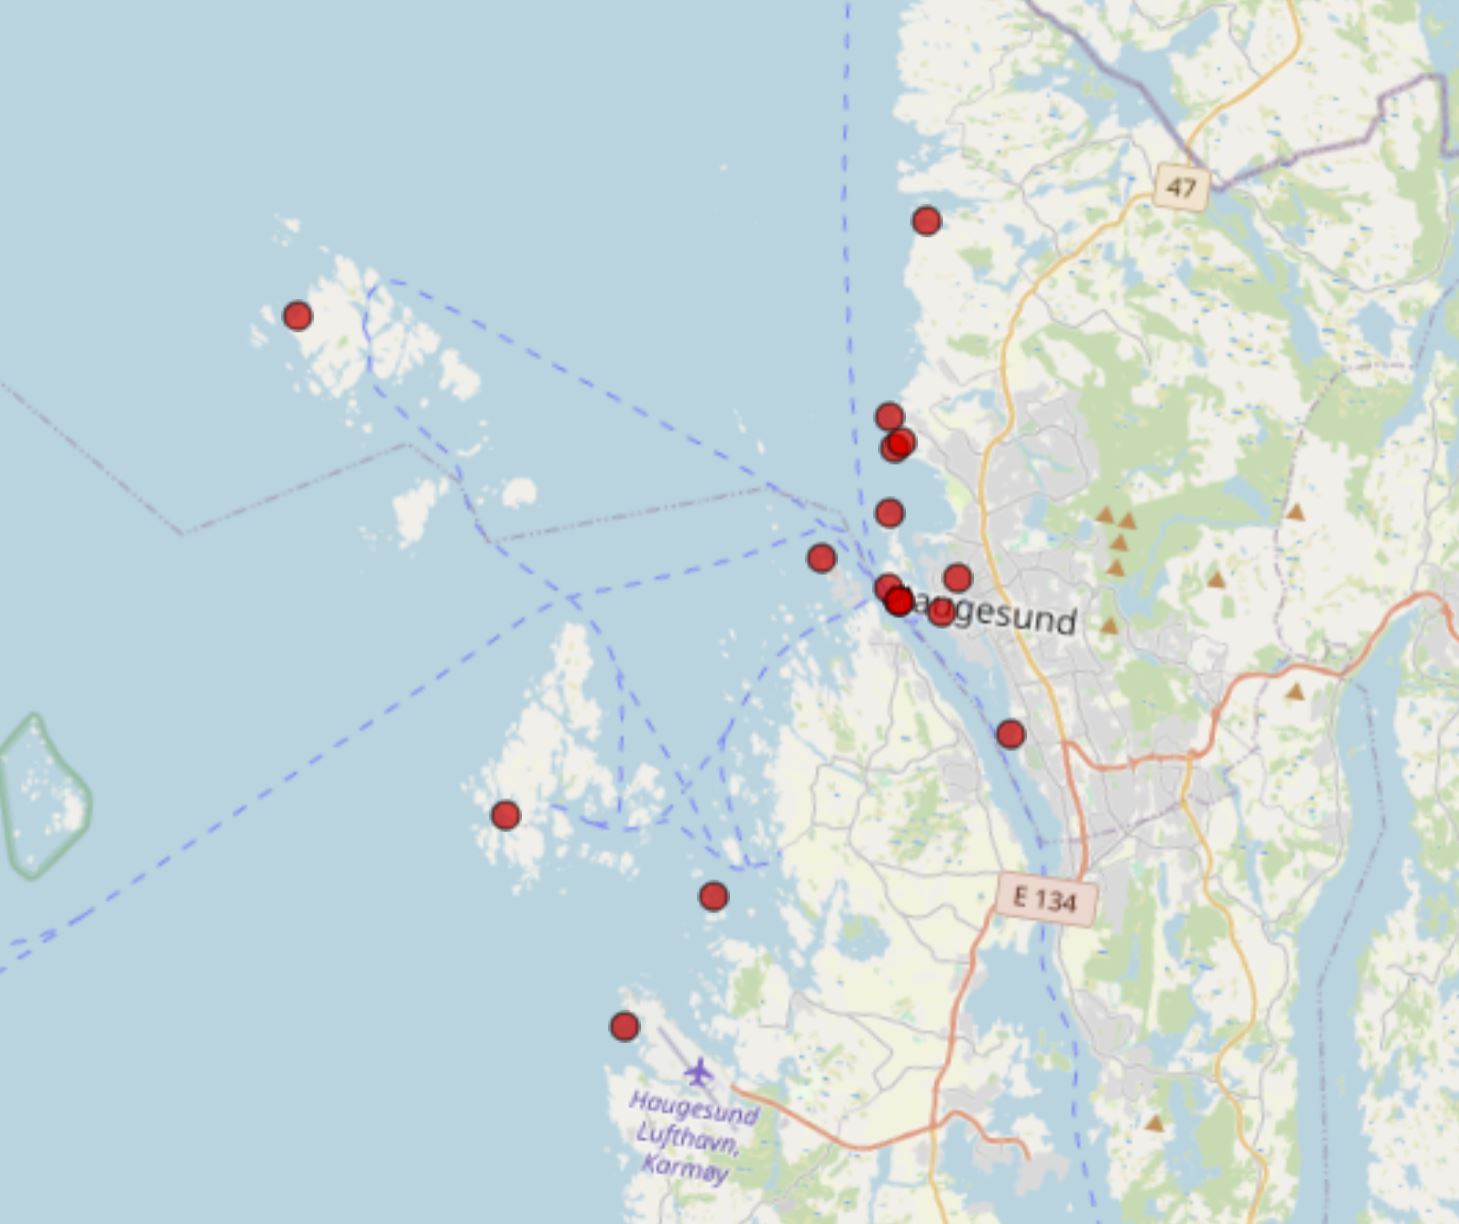 Dette er et kart over tidligere funn av havnespy, rapportert inn til Artsdatabanken